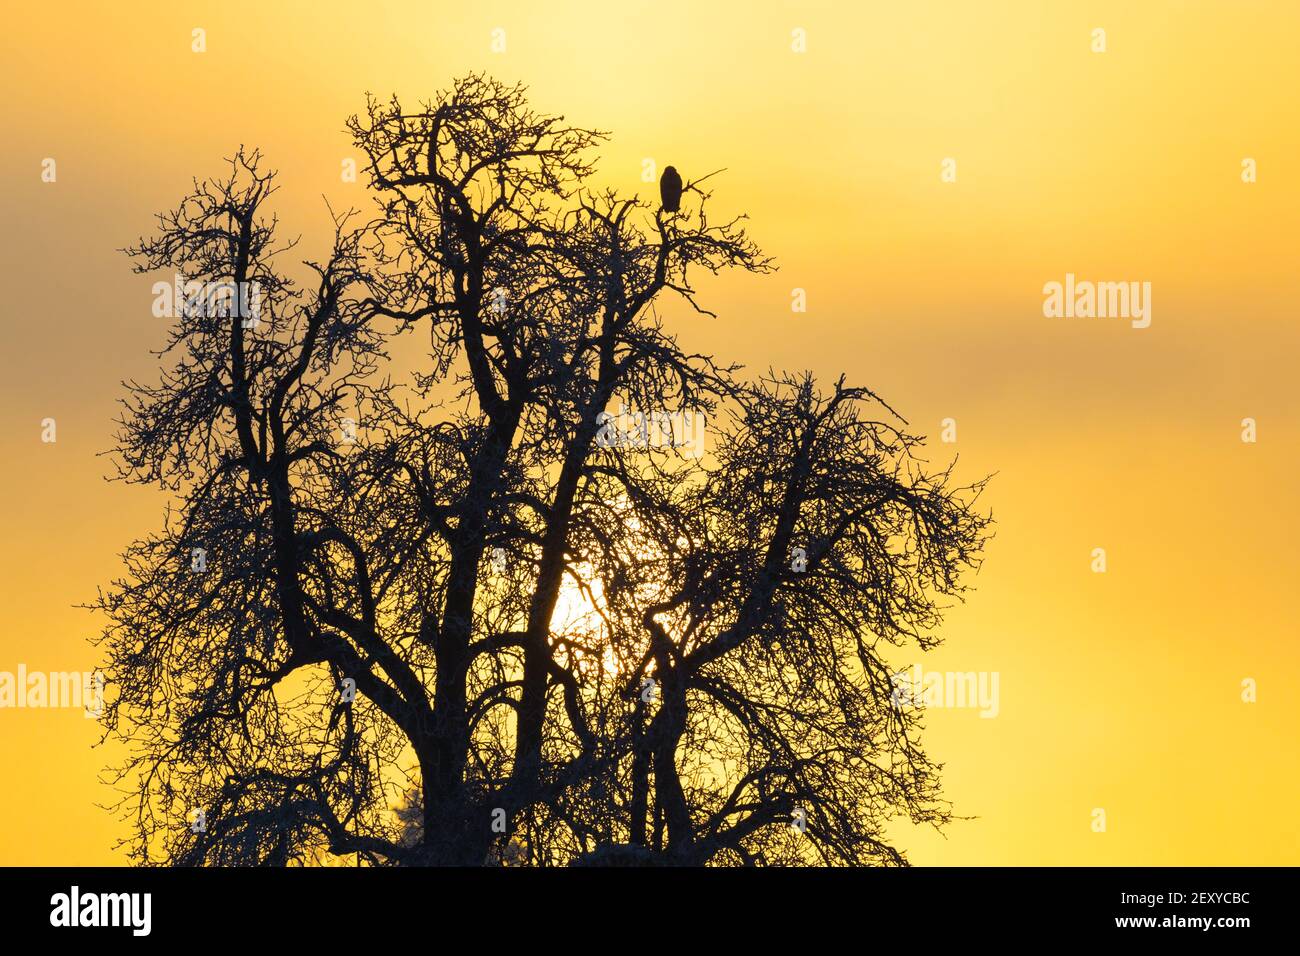 Ein Bussard (Buteo) Vogel, der während des farbenfrohen Sonnenuntergangs auf einem Baum sitzt Stockfoto